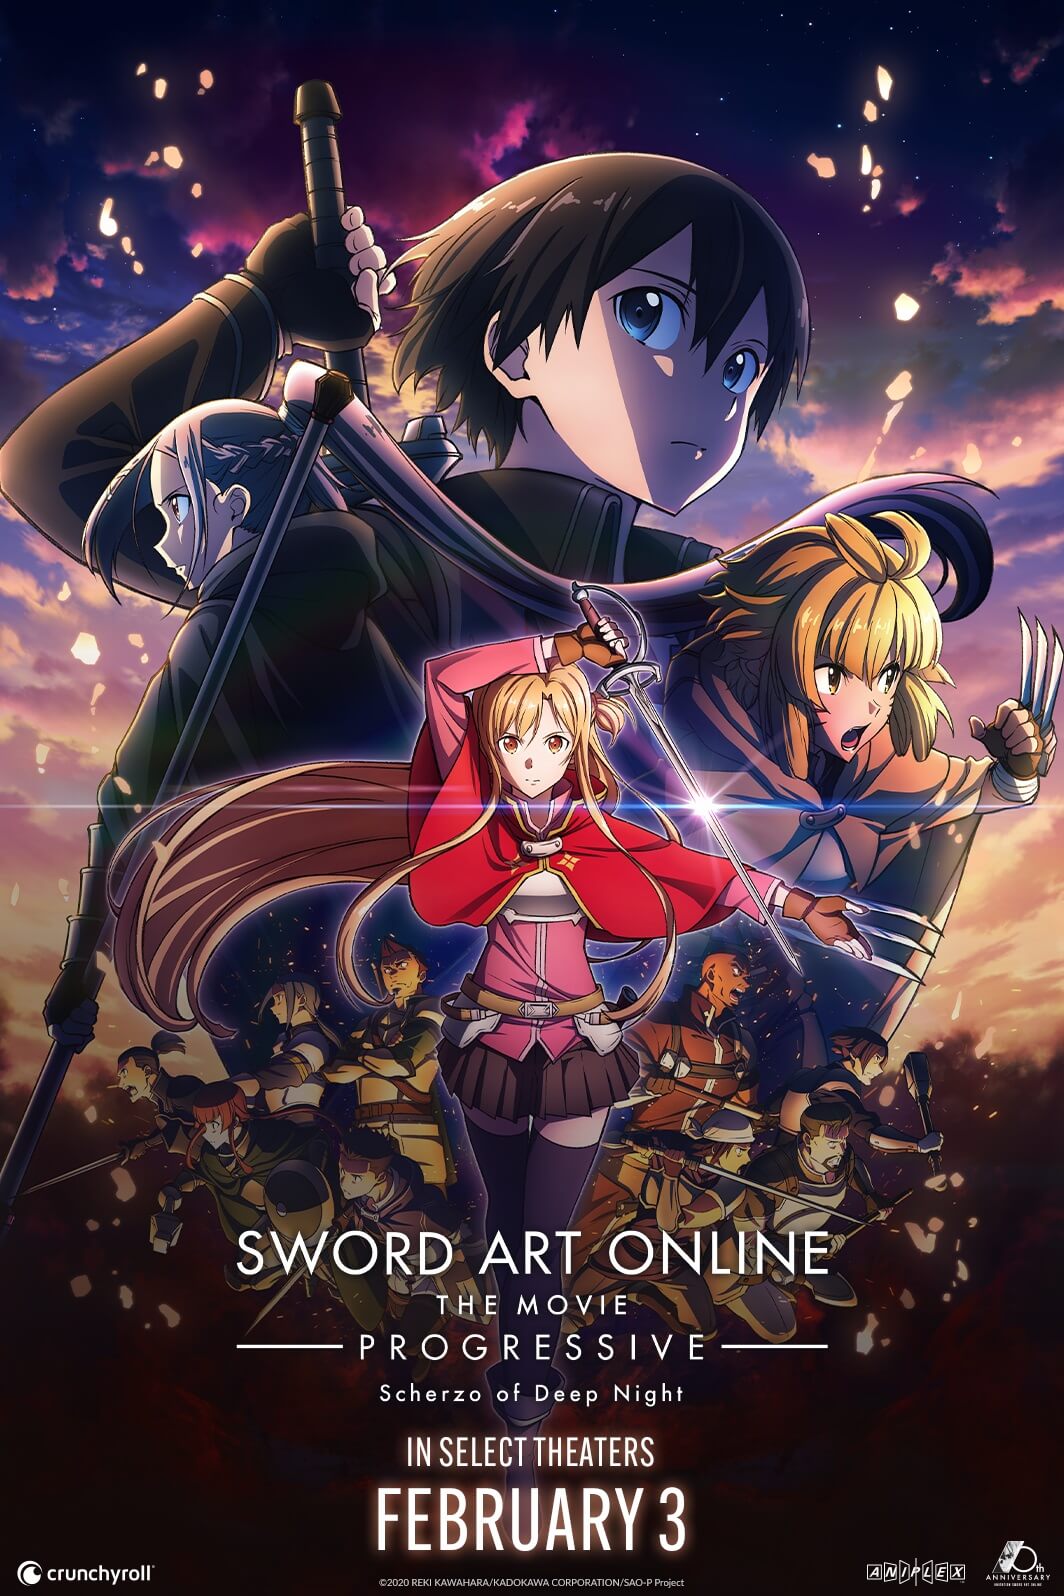 Crunchyroll - Novo filme da franquia Sword Art Online Progressive